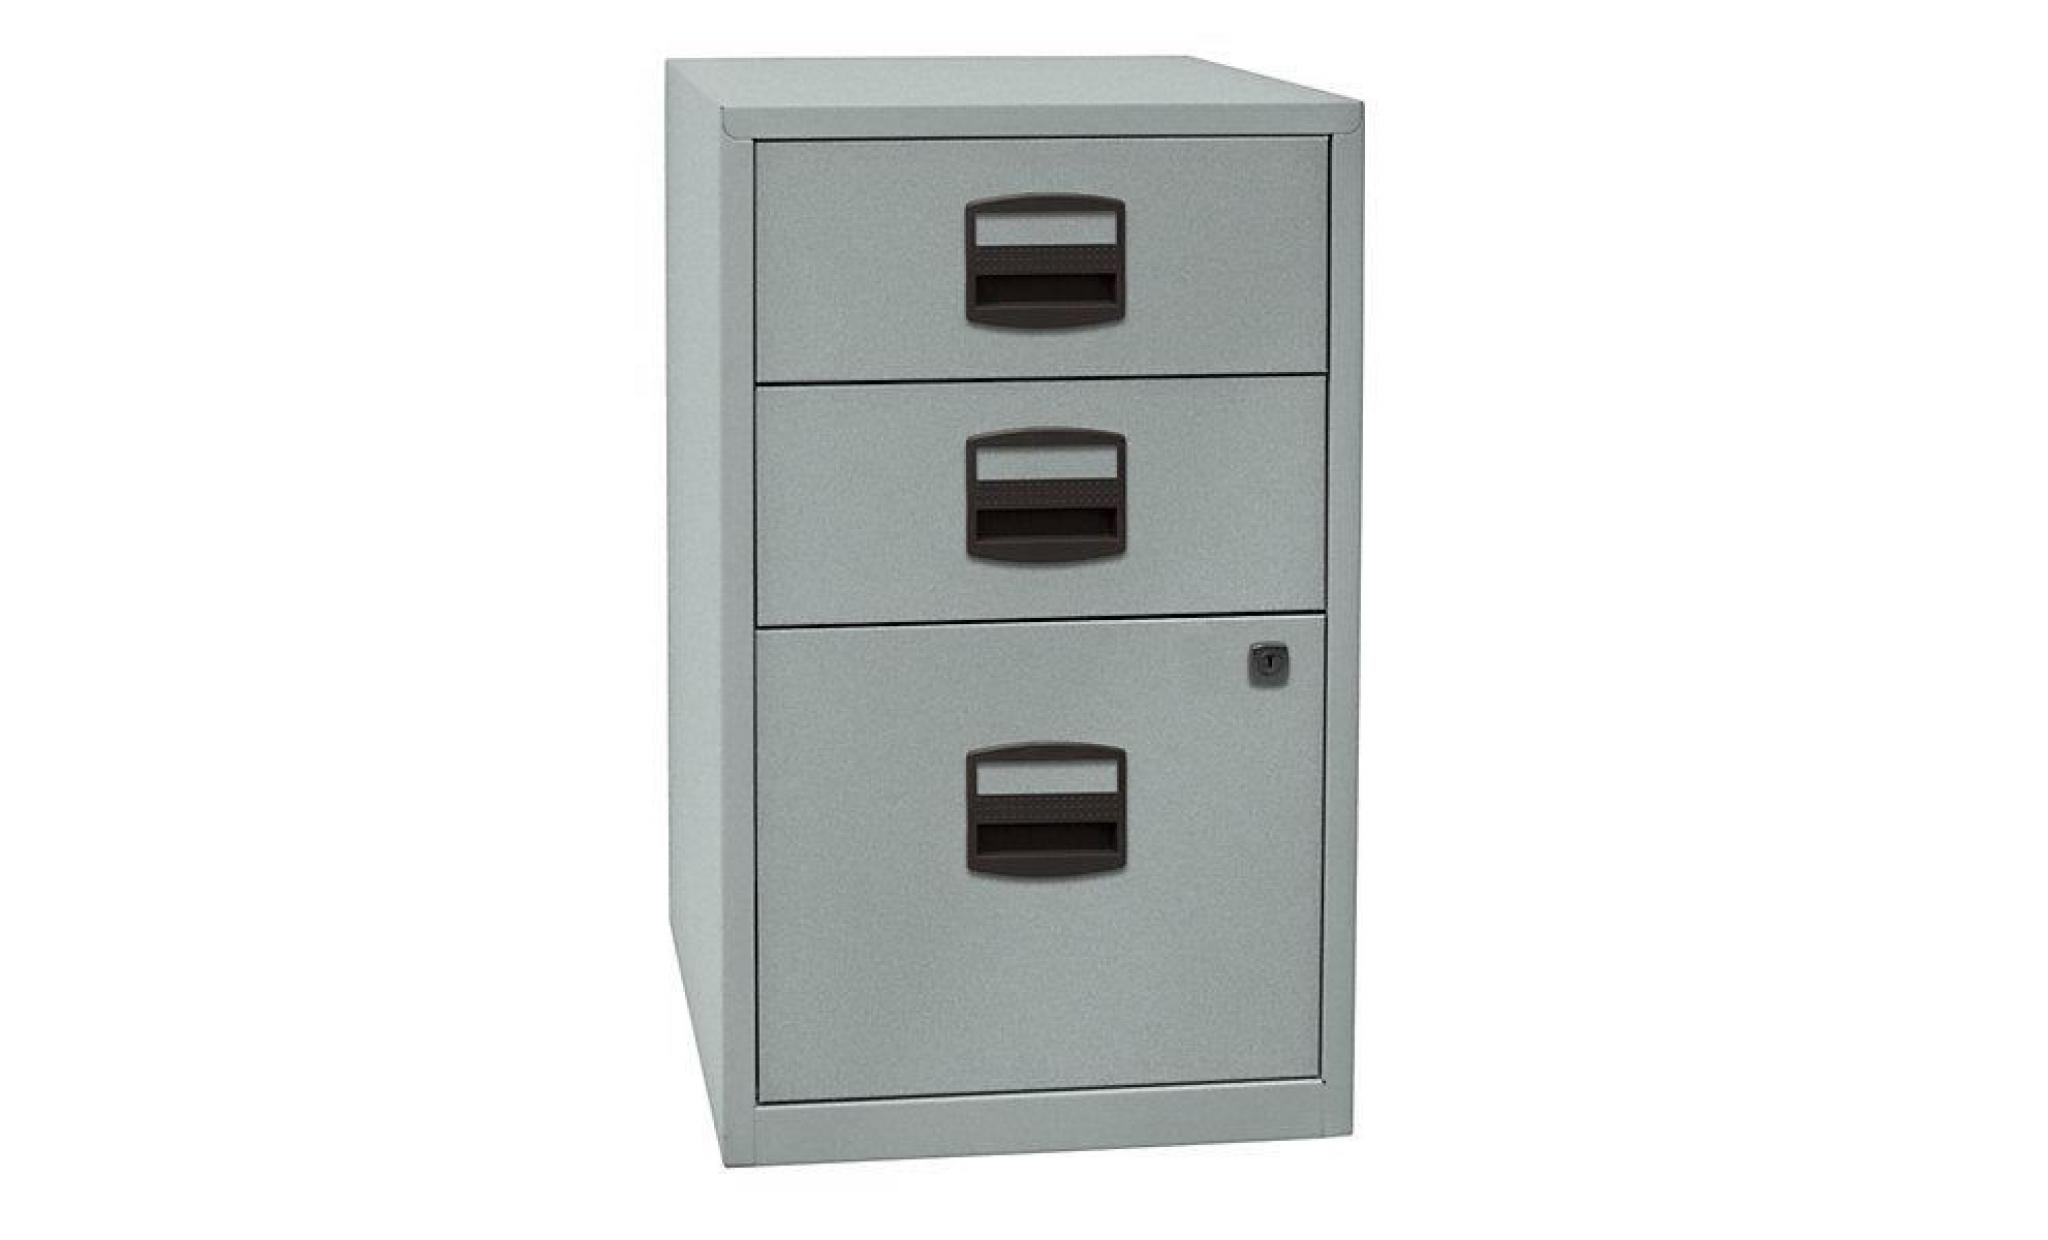 armoire hauteur bureau pfa   2 tiroirs, 1 tiroir pour ds gris clair / bleu oxford   armoire basse armoire de bureau armoire à